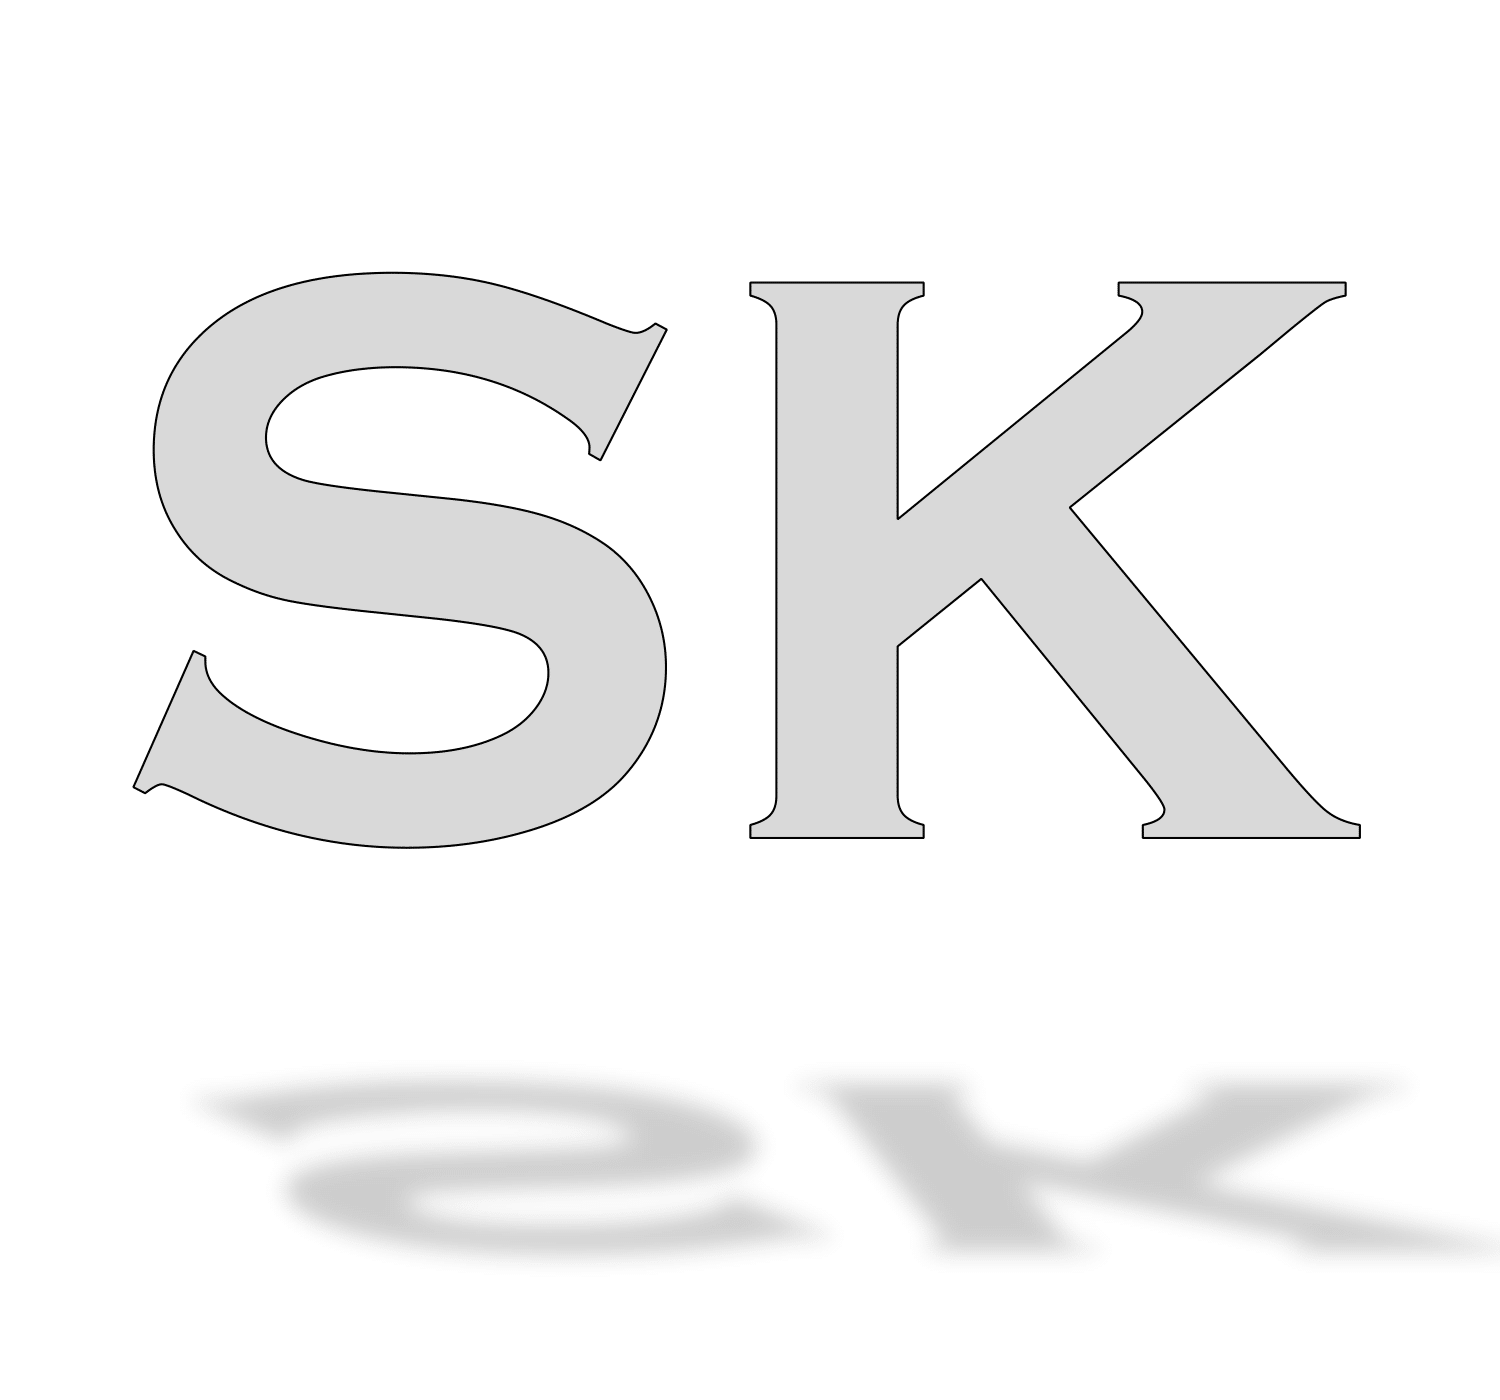 SK Associates